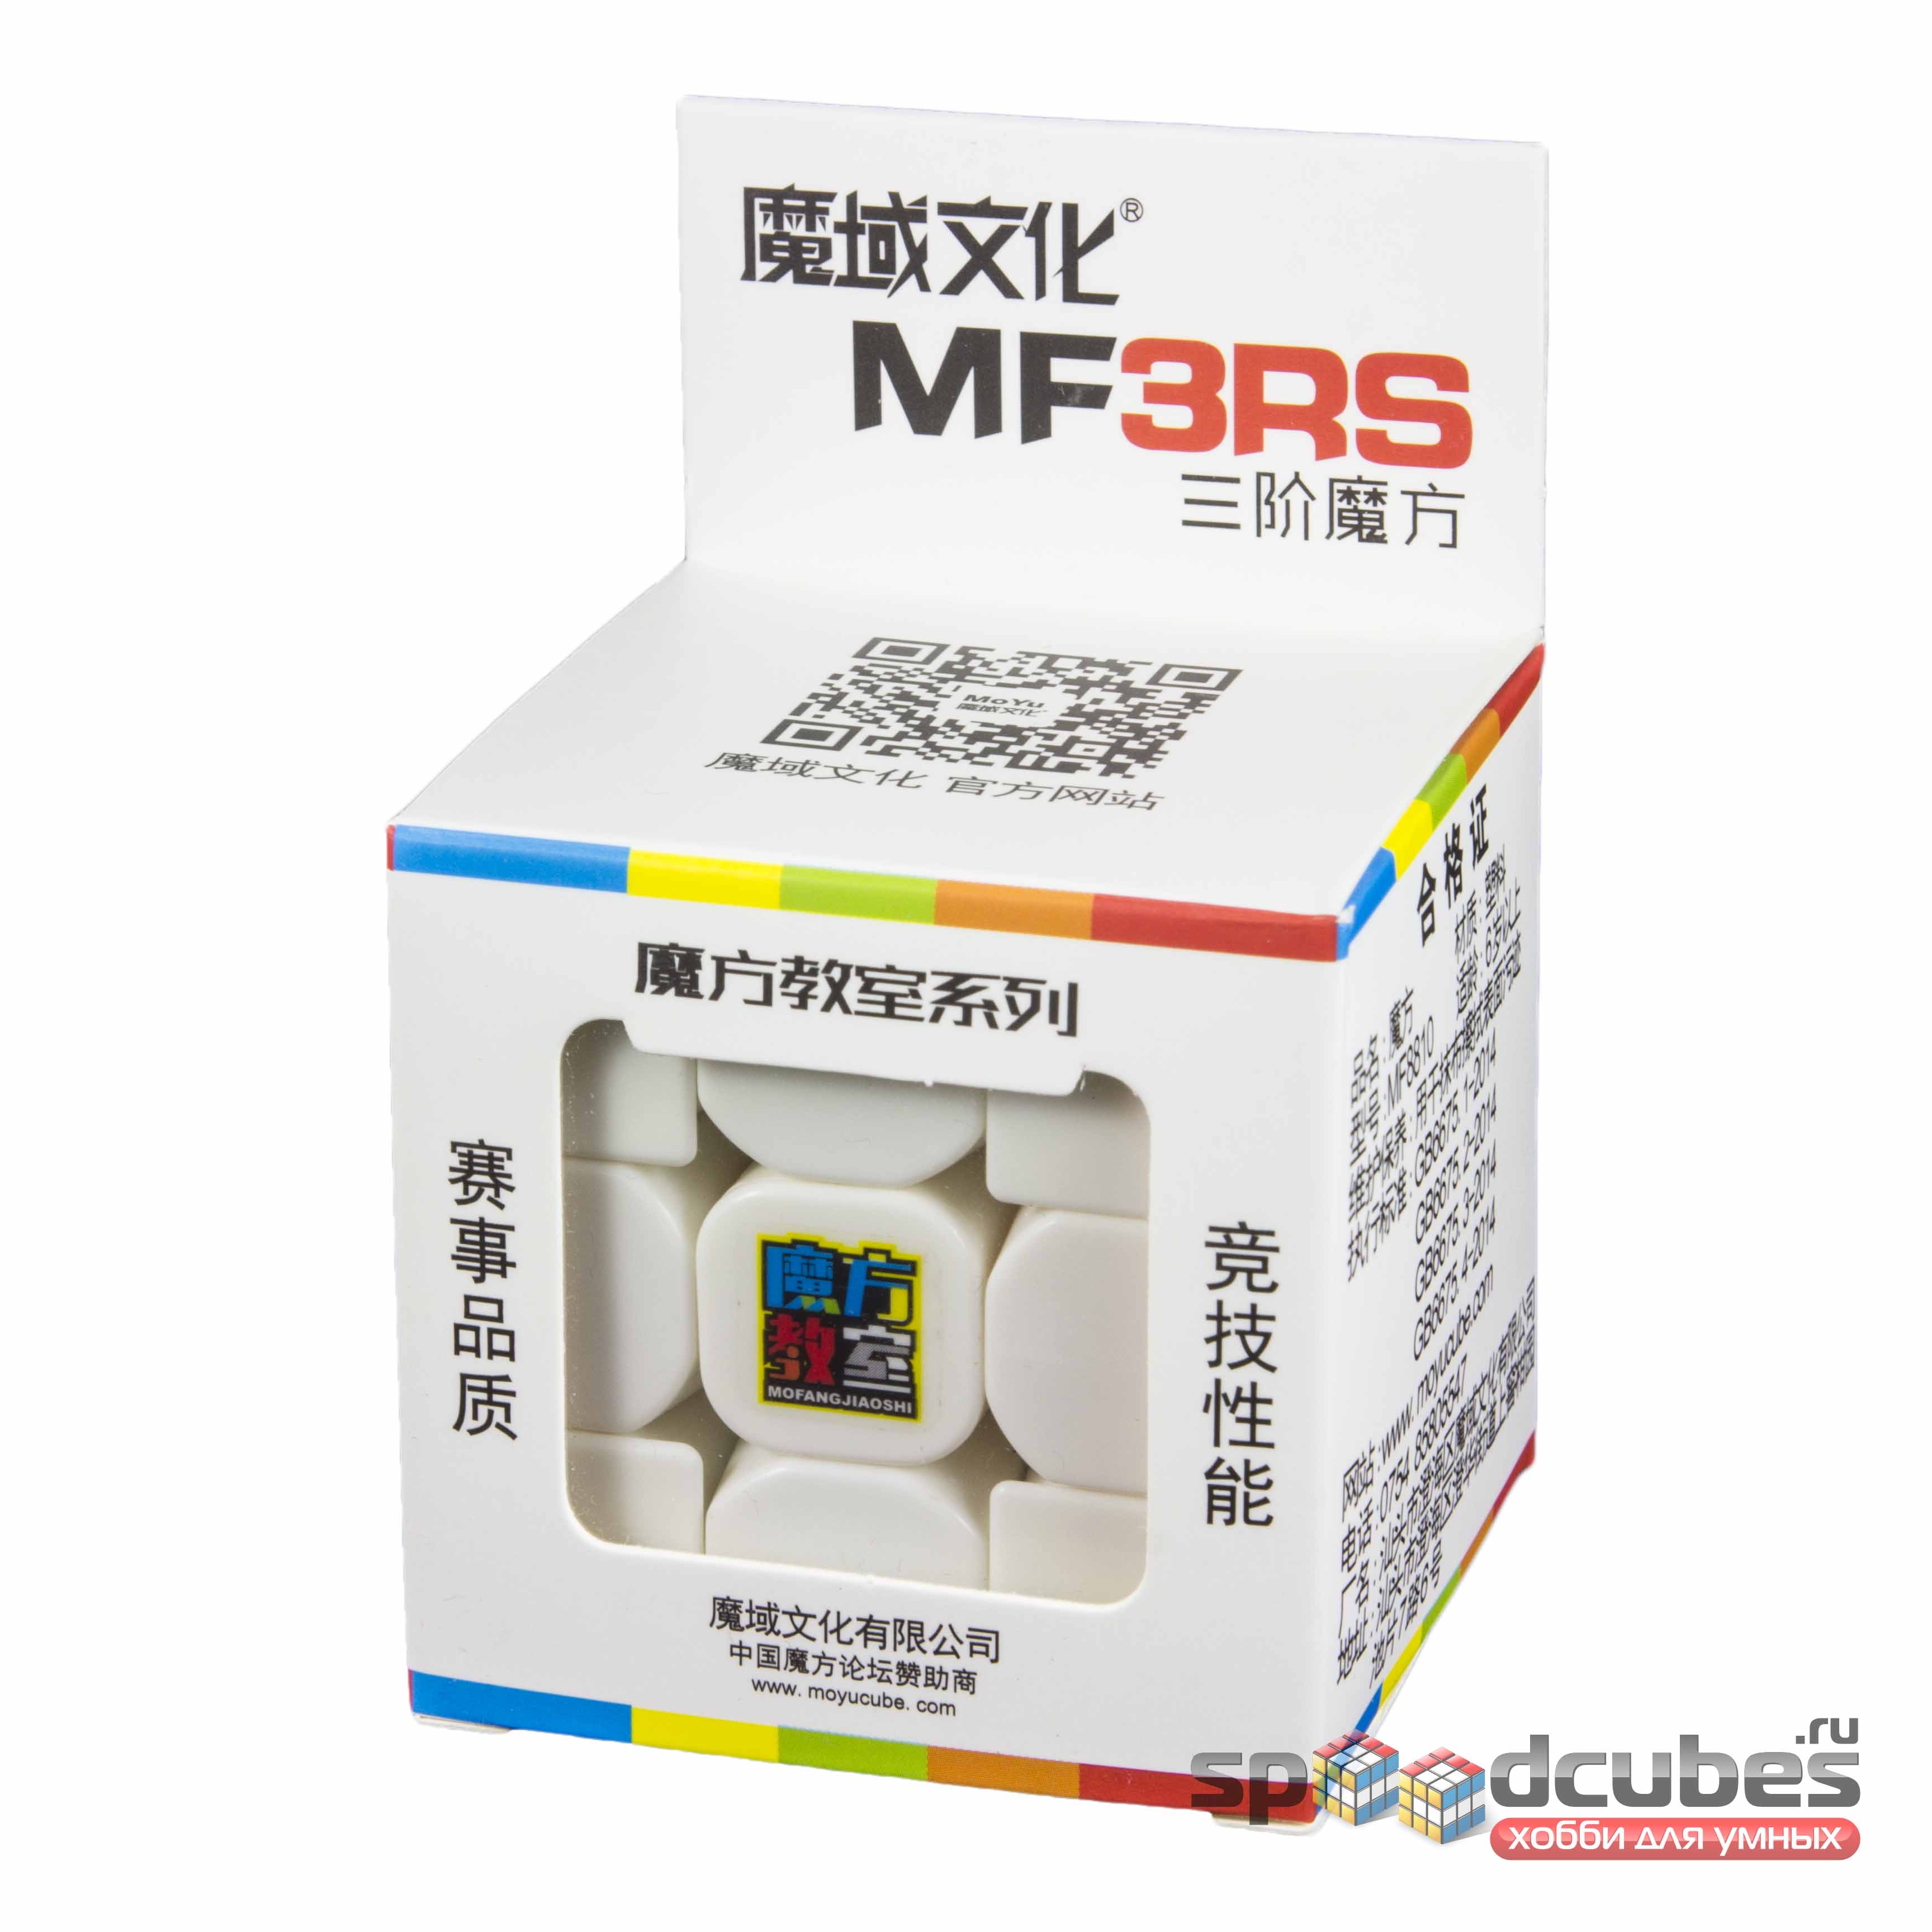 Moyu 3x3x3 Mofangjiaoshi Mf3rs Color 1